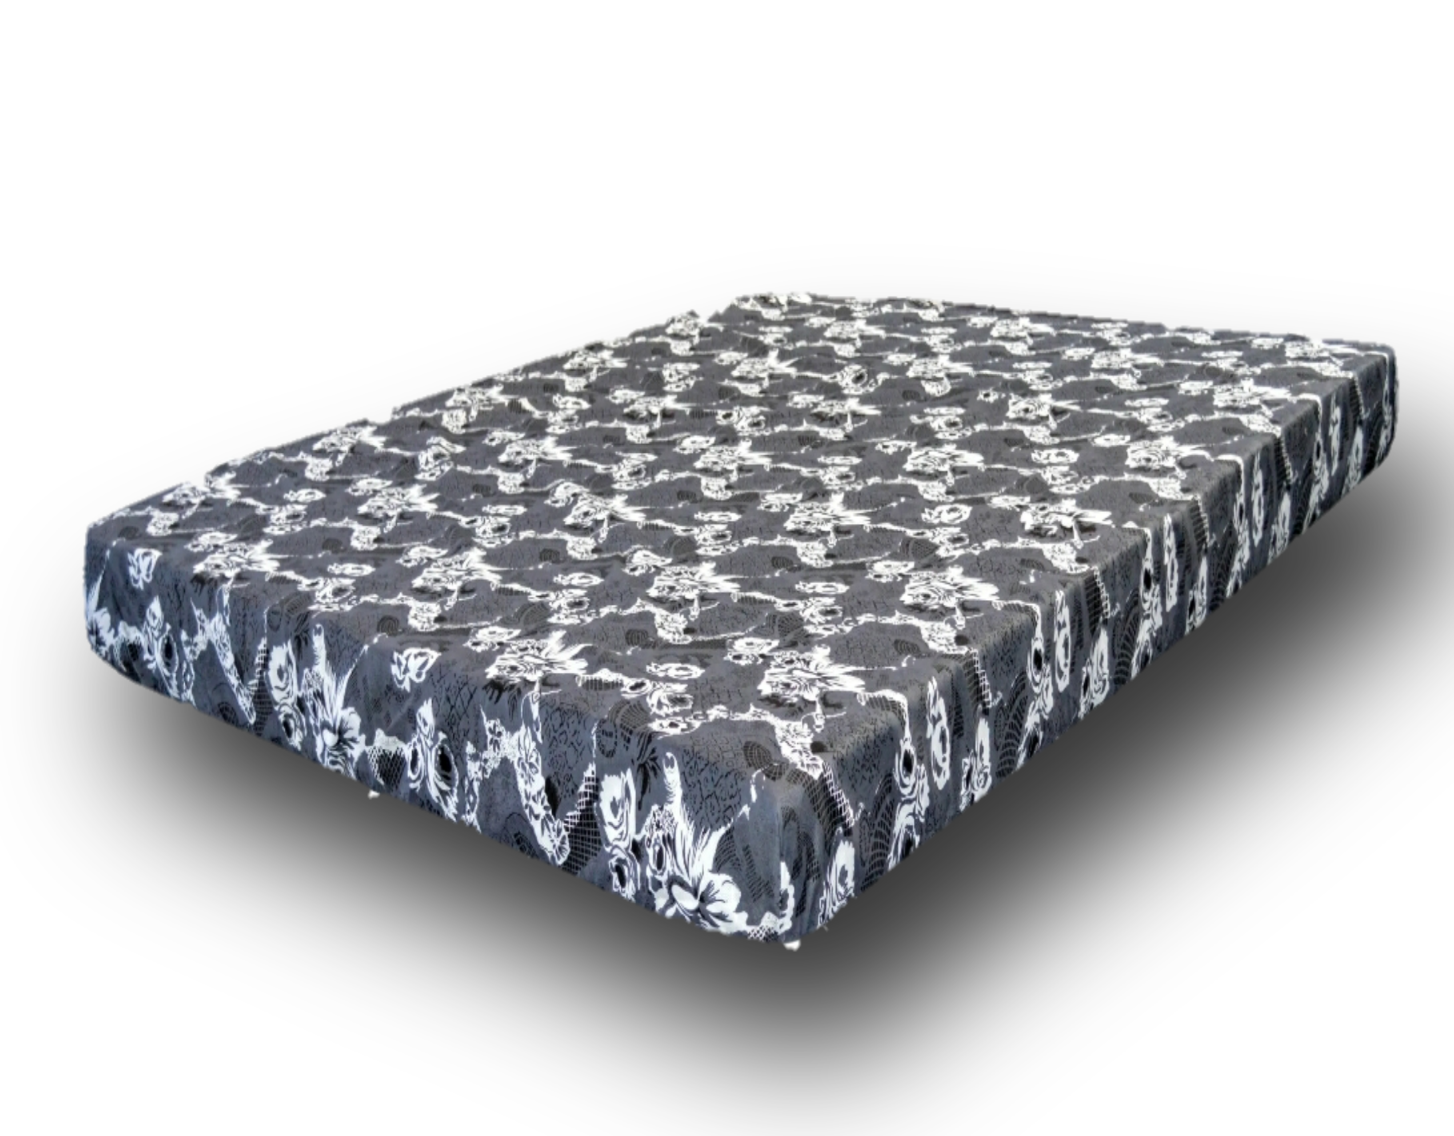 5 inch foam mattress price